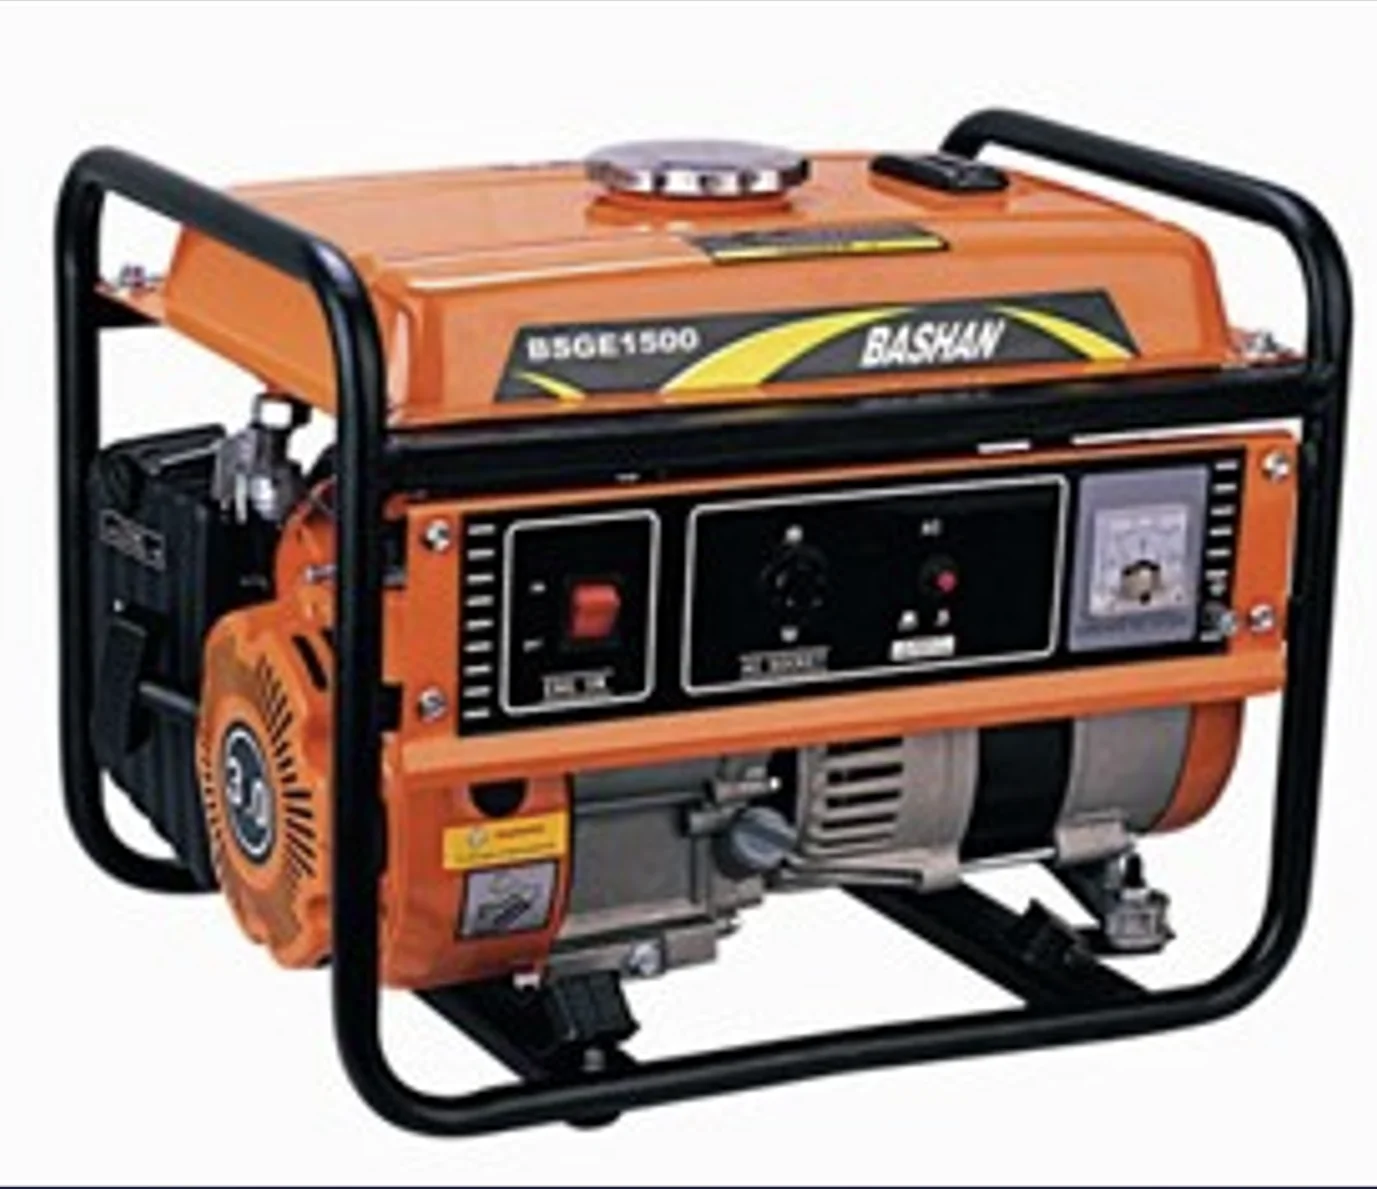 Bashan portable Generator 800w 2000w 2500w 5000w 6000w (1600576988469)